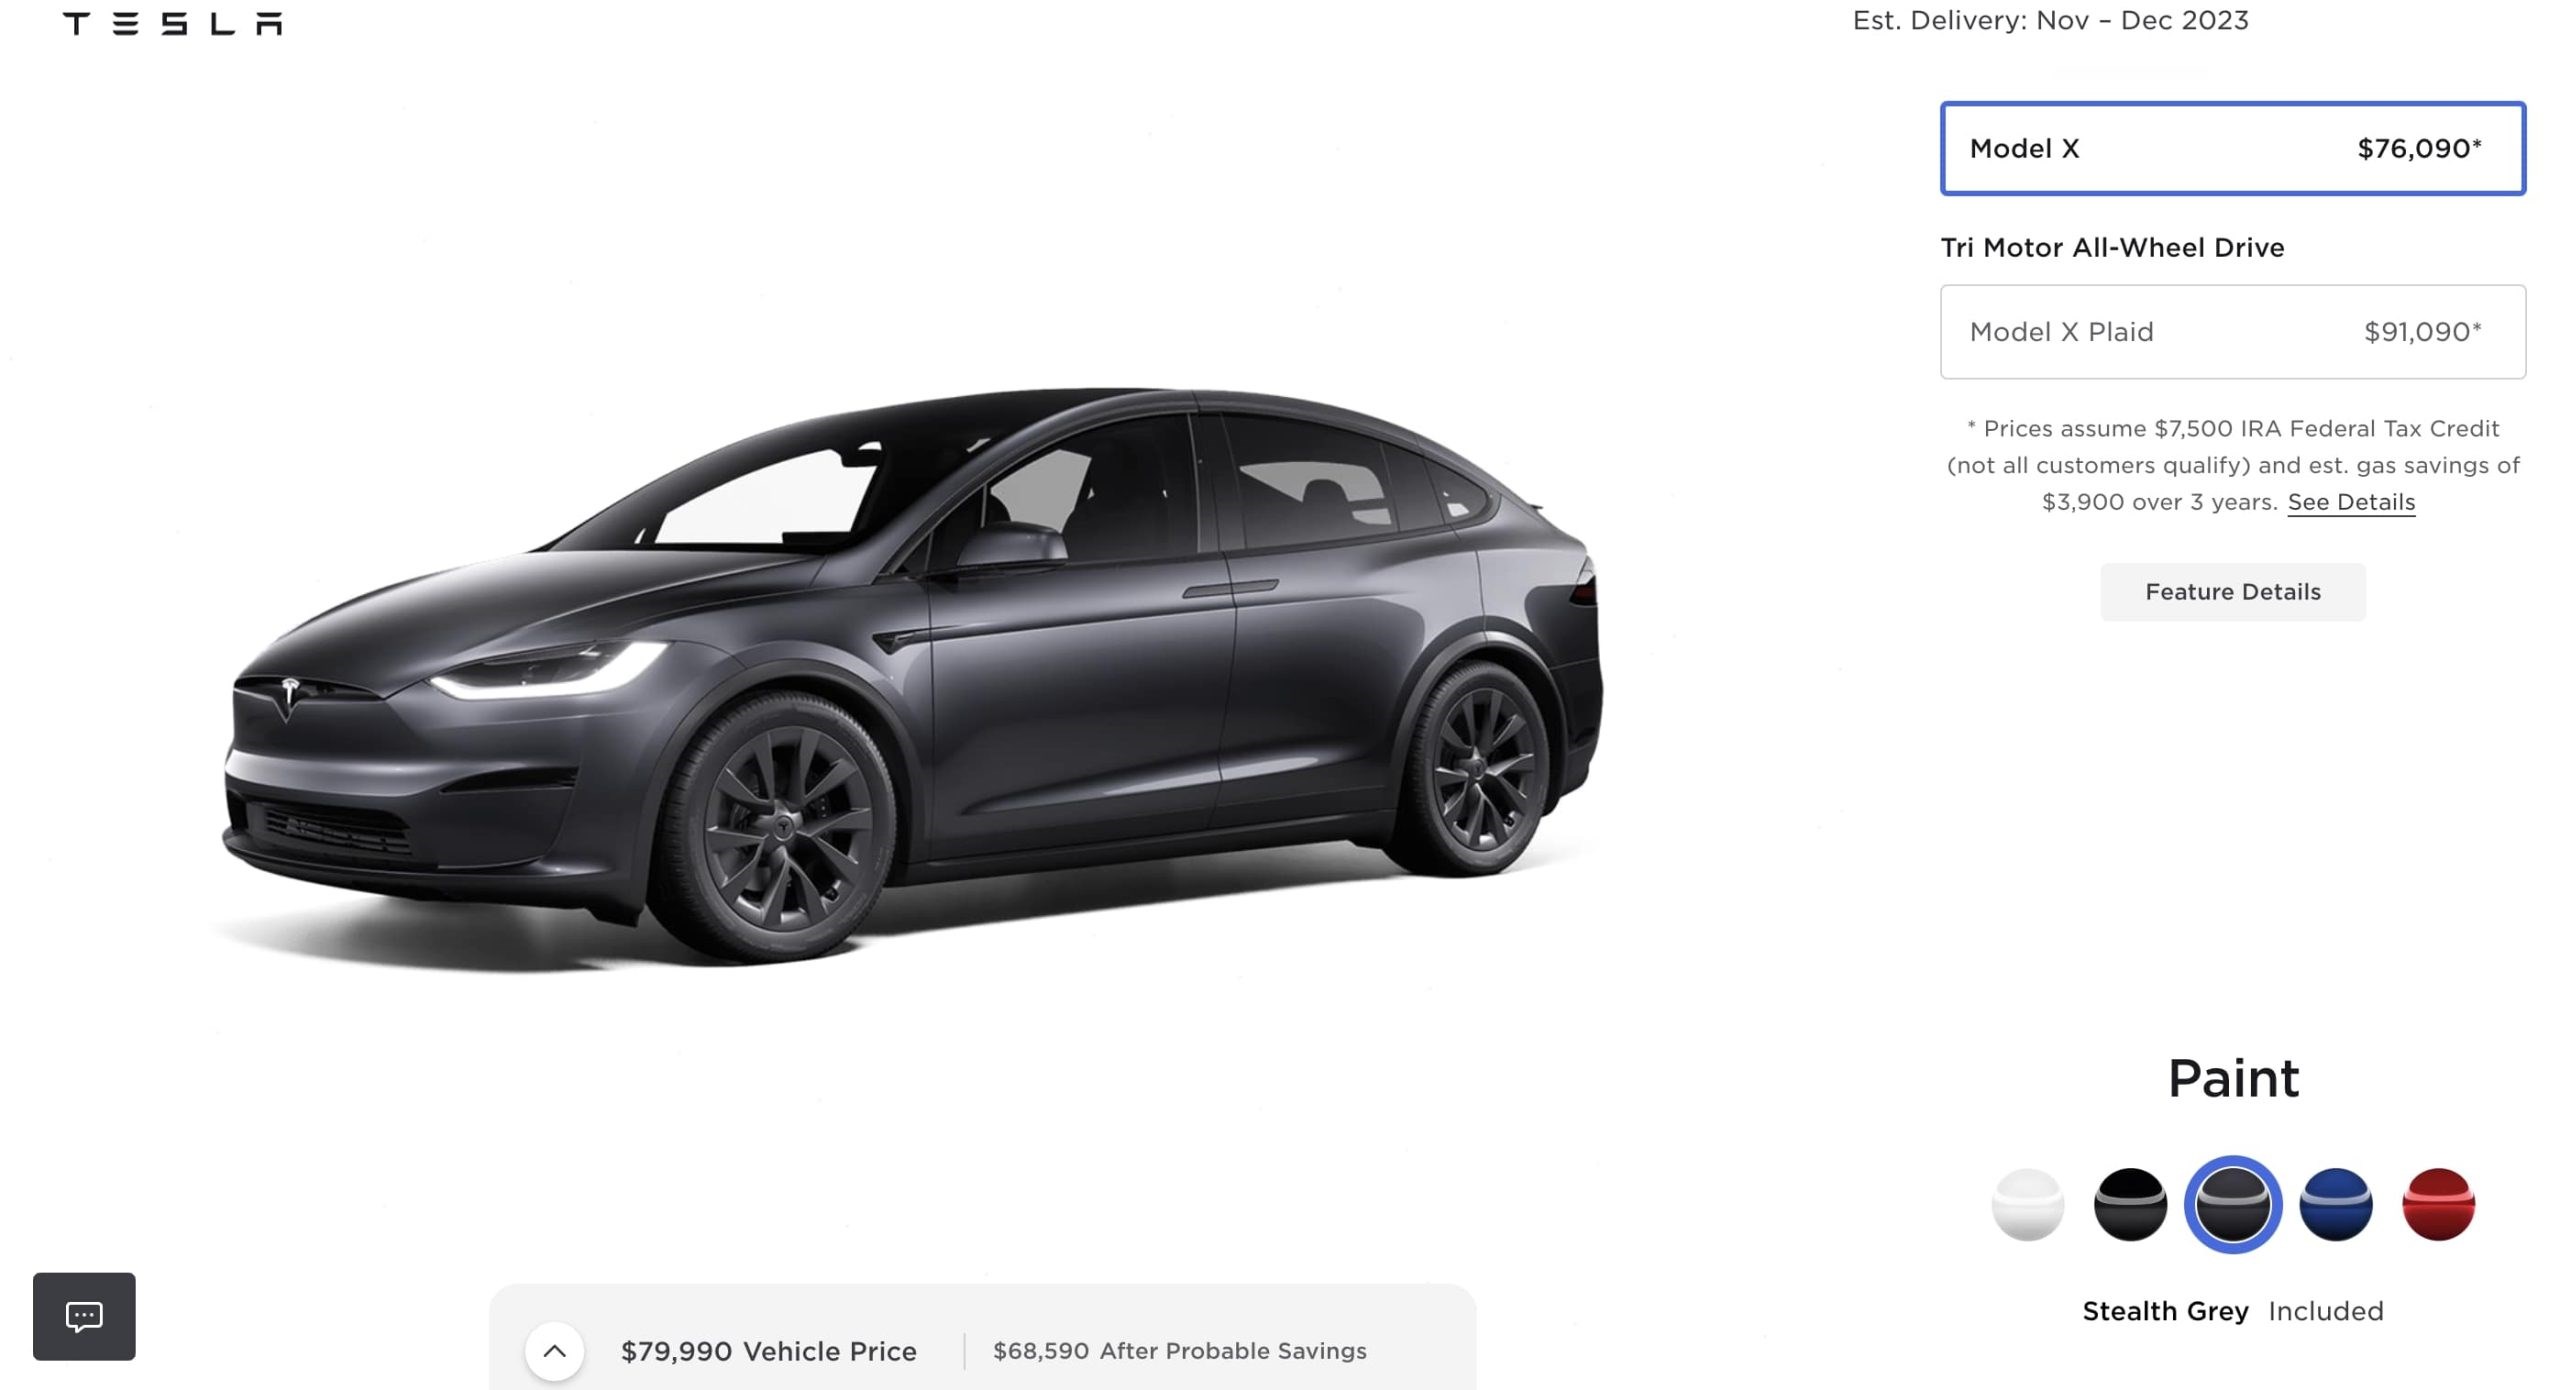 Tesla, Model S ve Model X'e yeni bir renk seçeneği ekledi